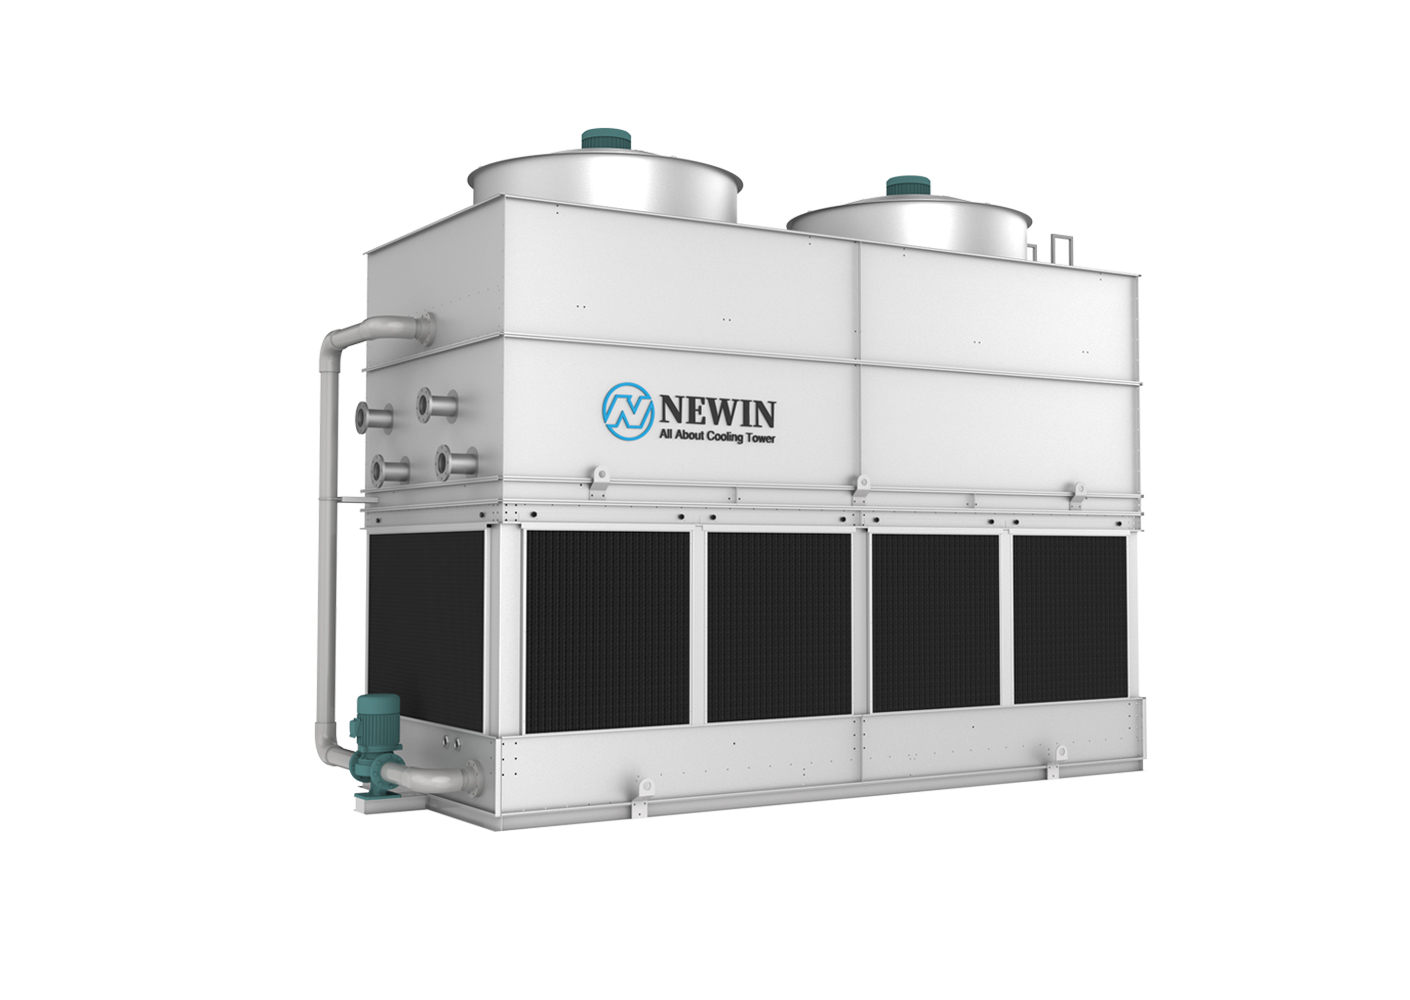 Resfriadores de circuito fechado evaporativo de tiragem induzida NWN-250-Z7-S